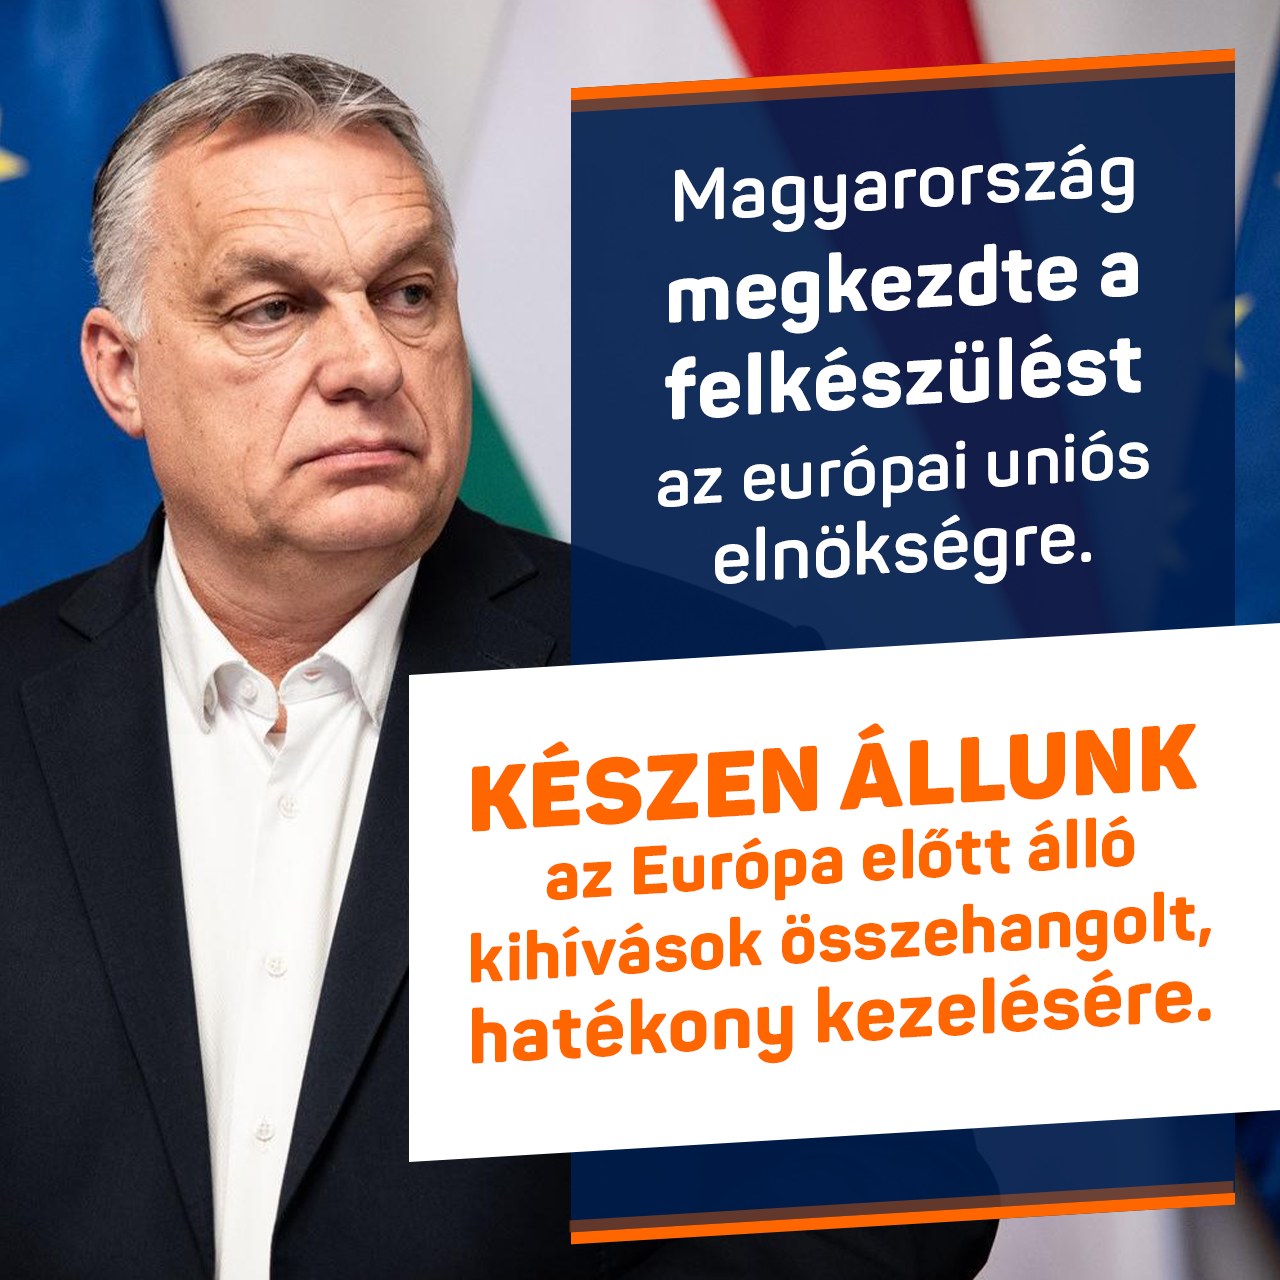 Magyarország Kormánya megkezdte a felkészülést a második európai uniós elnökségére, ami Európában szinte példa nélküli. Tapasztalatban és felkészültségben nem lesz hiány!